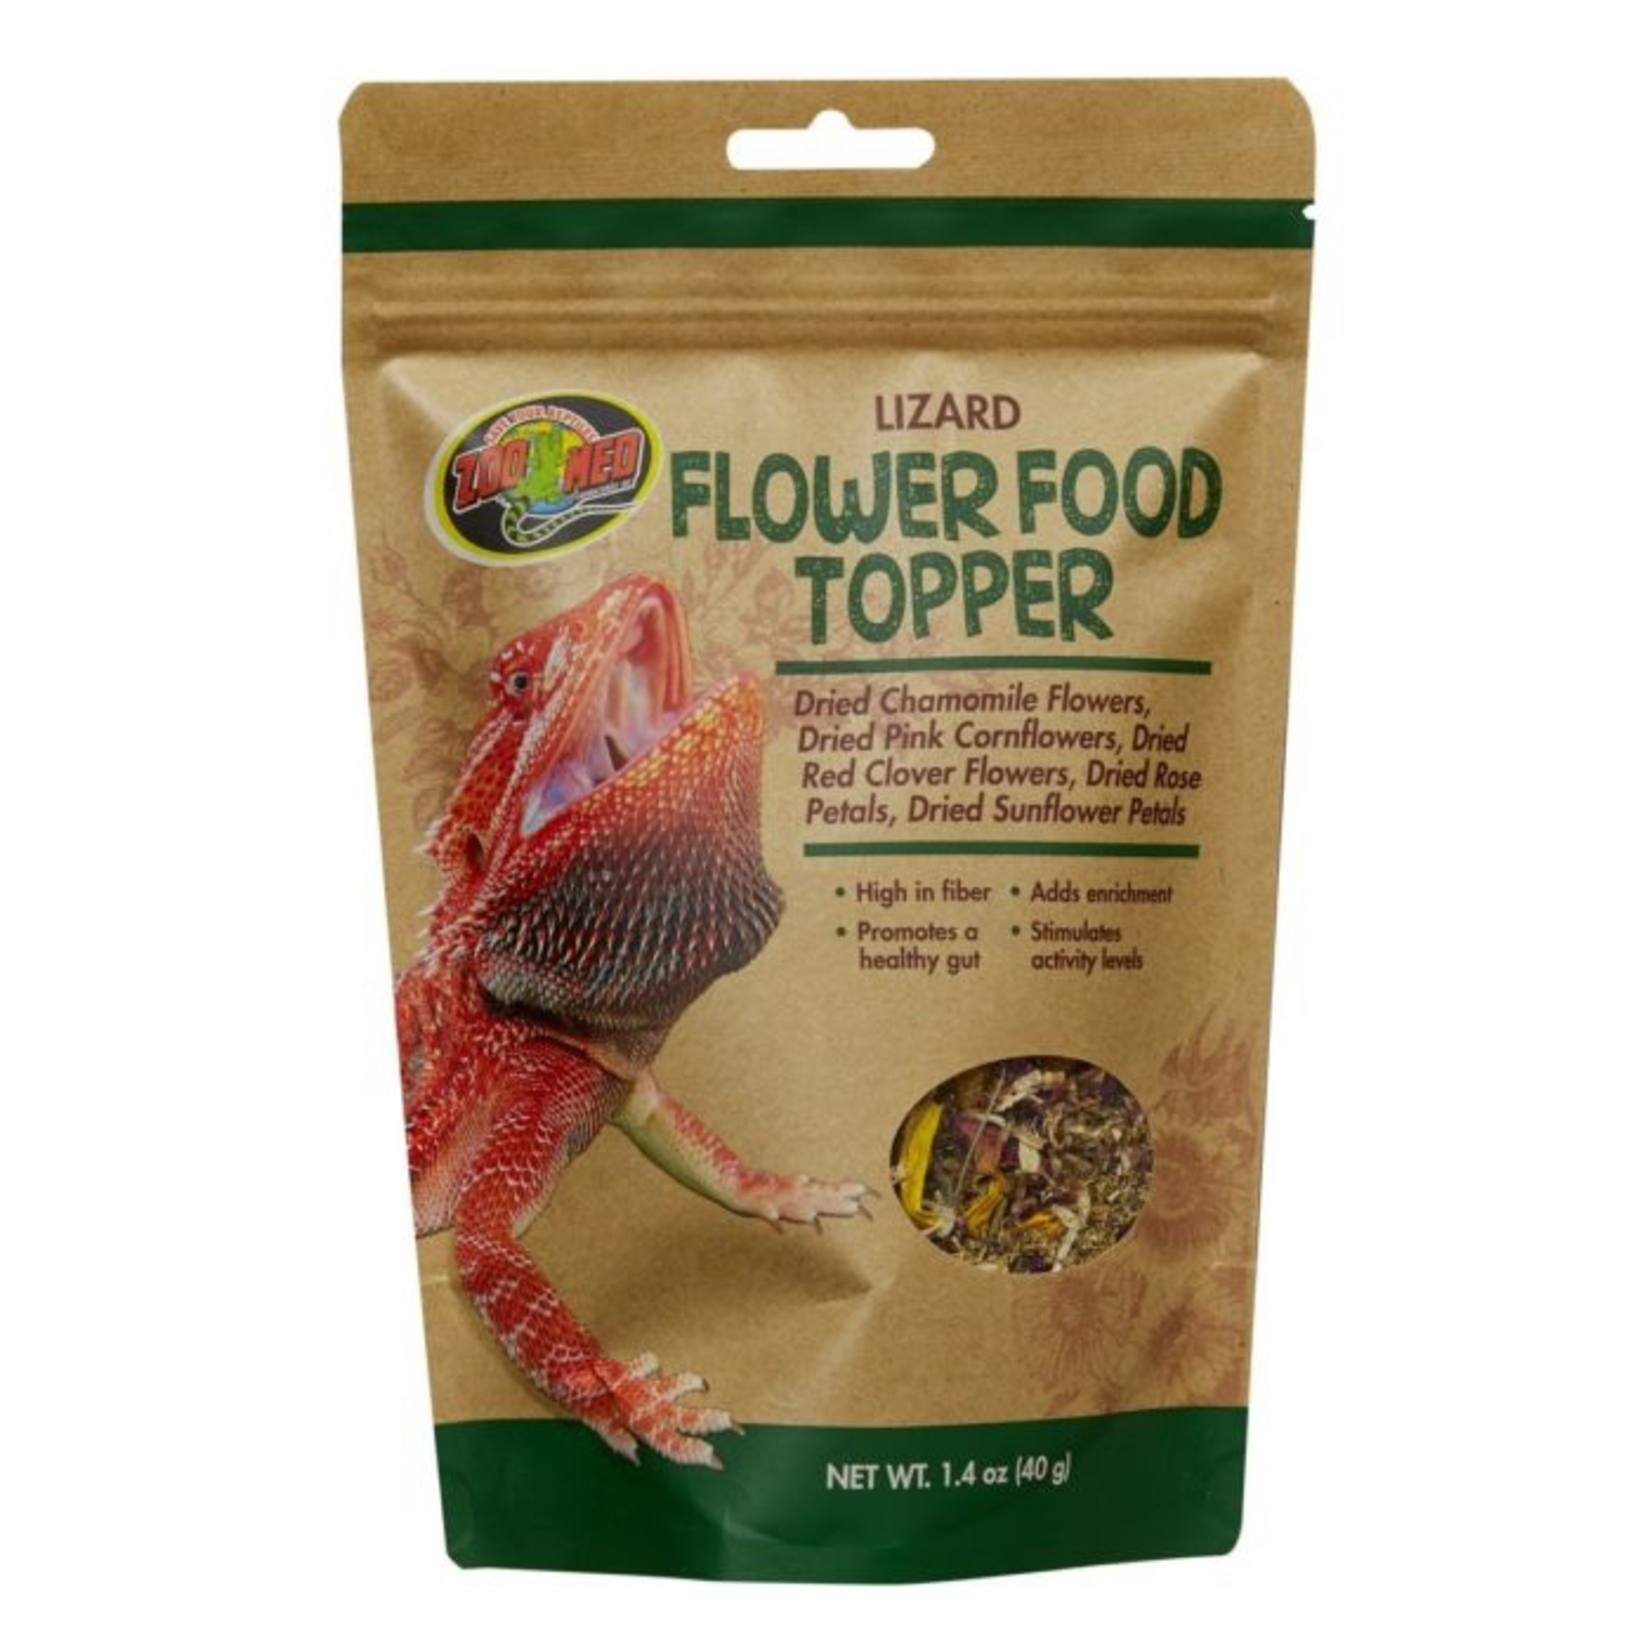 Zoo Med Flower Food Topper - Lizard - 1.4 oz